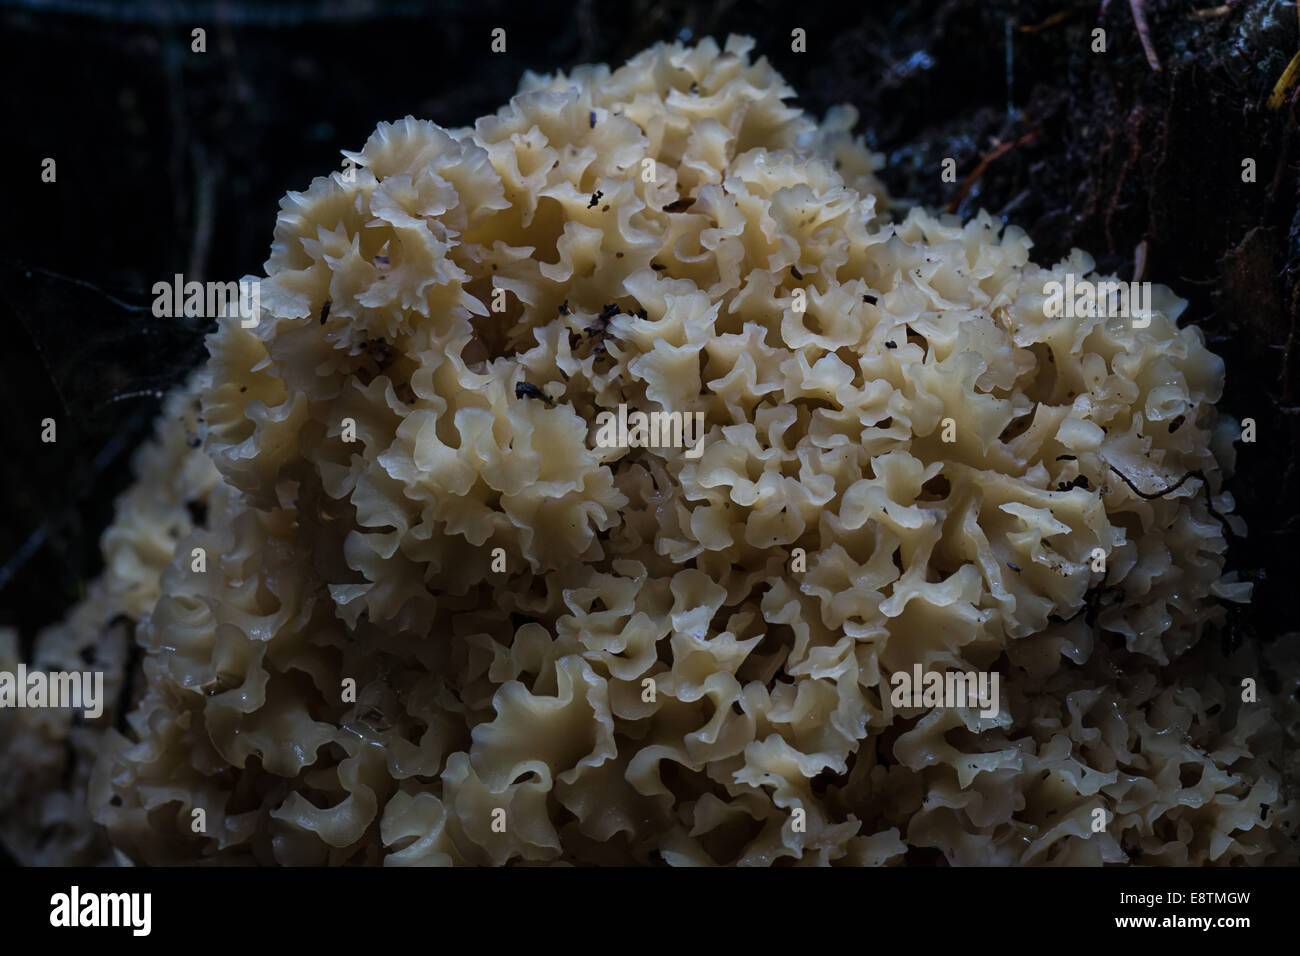 Brain or Cauliflower Fungus Stock Photo